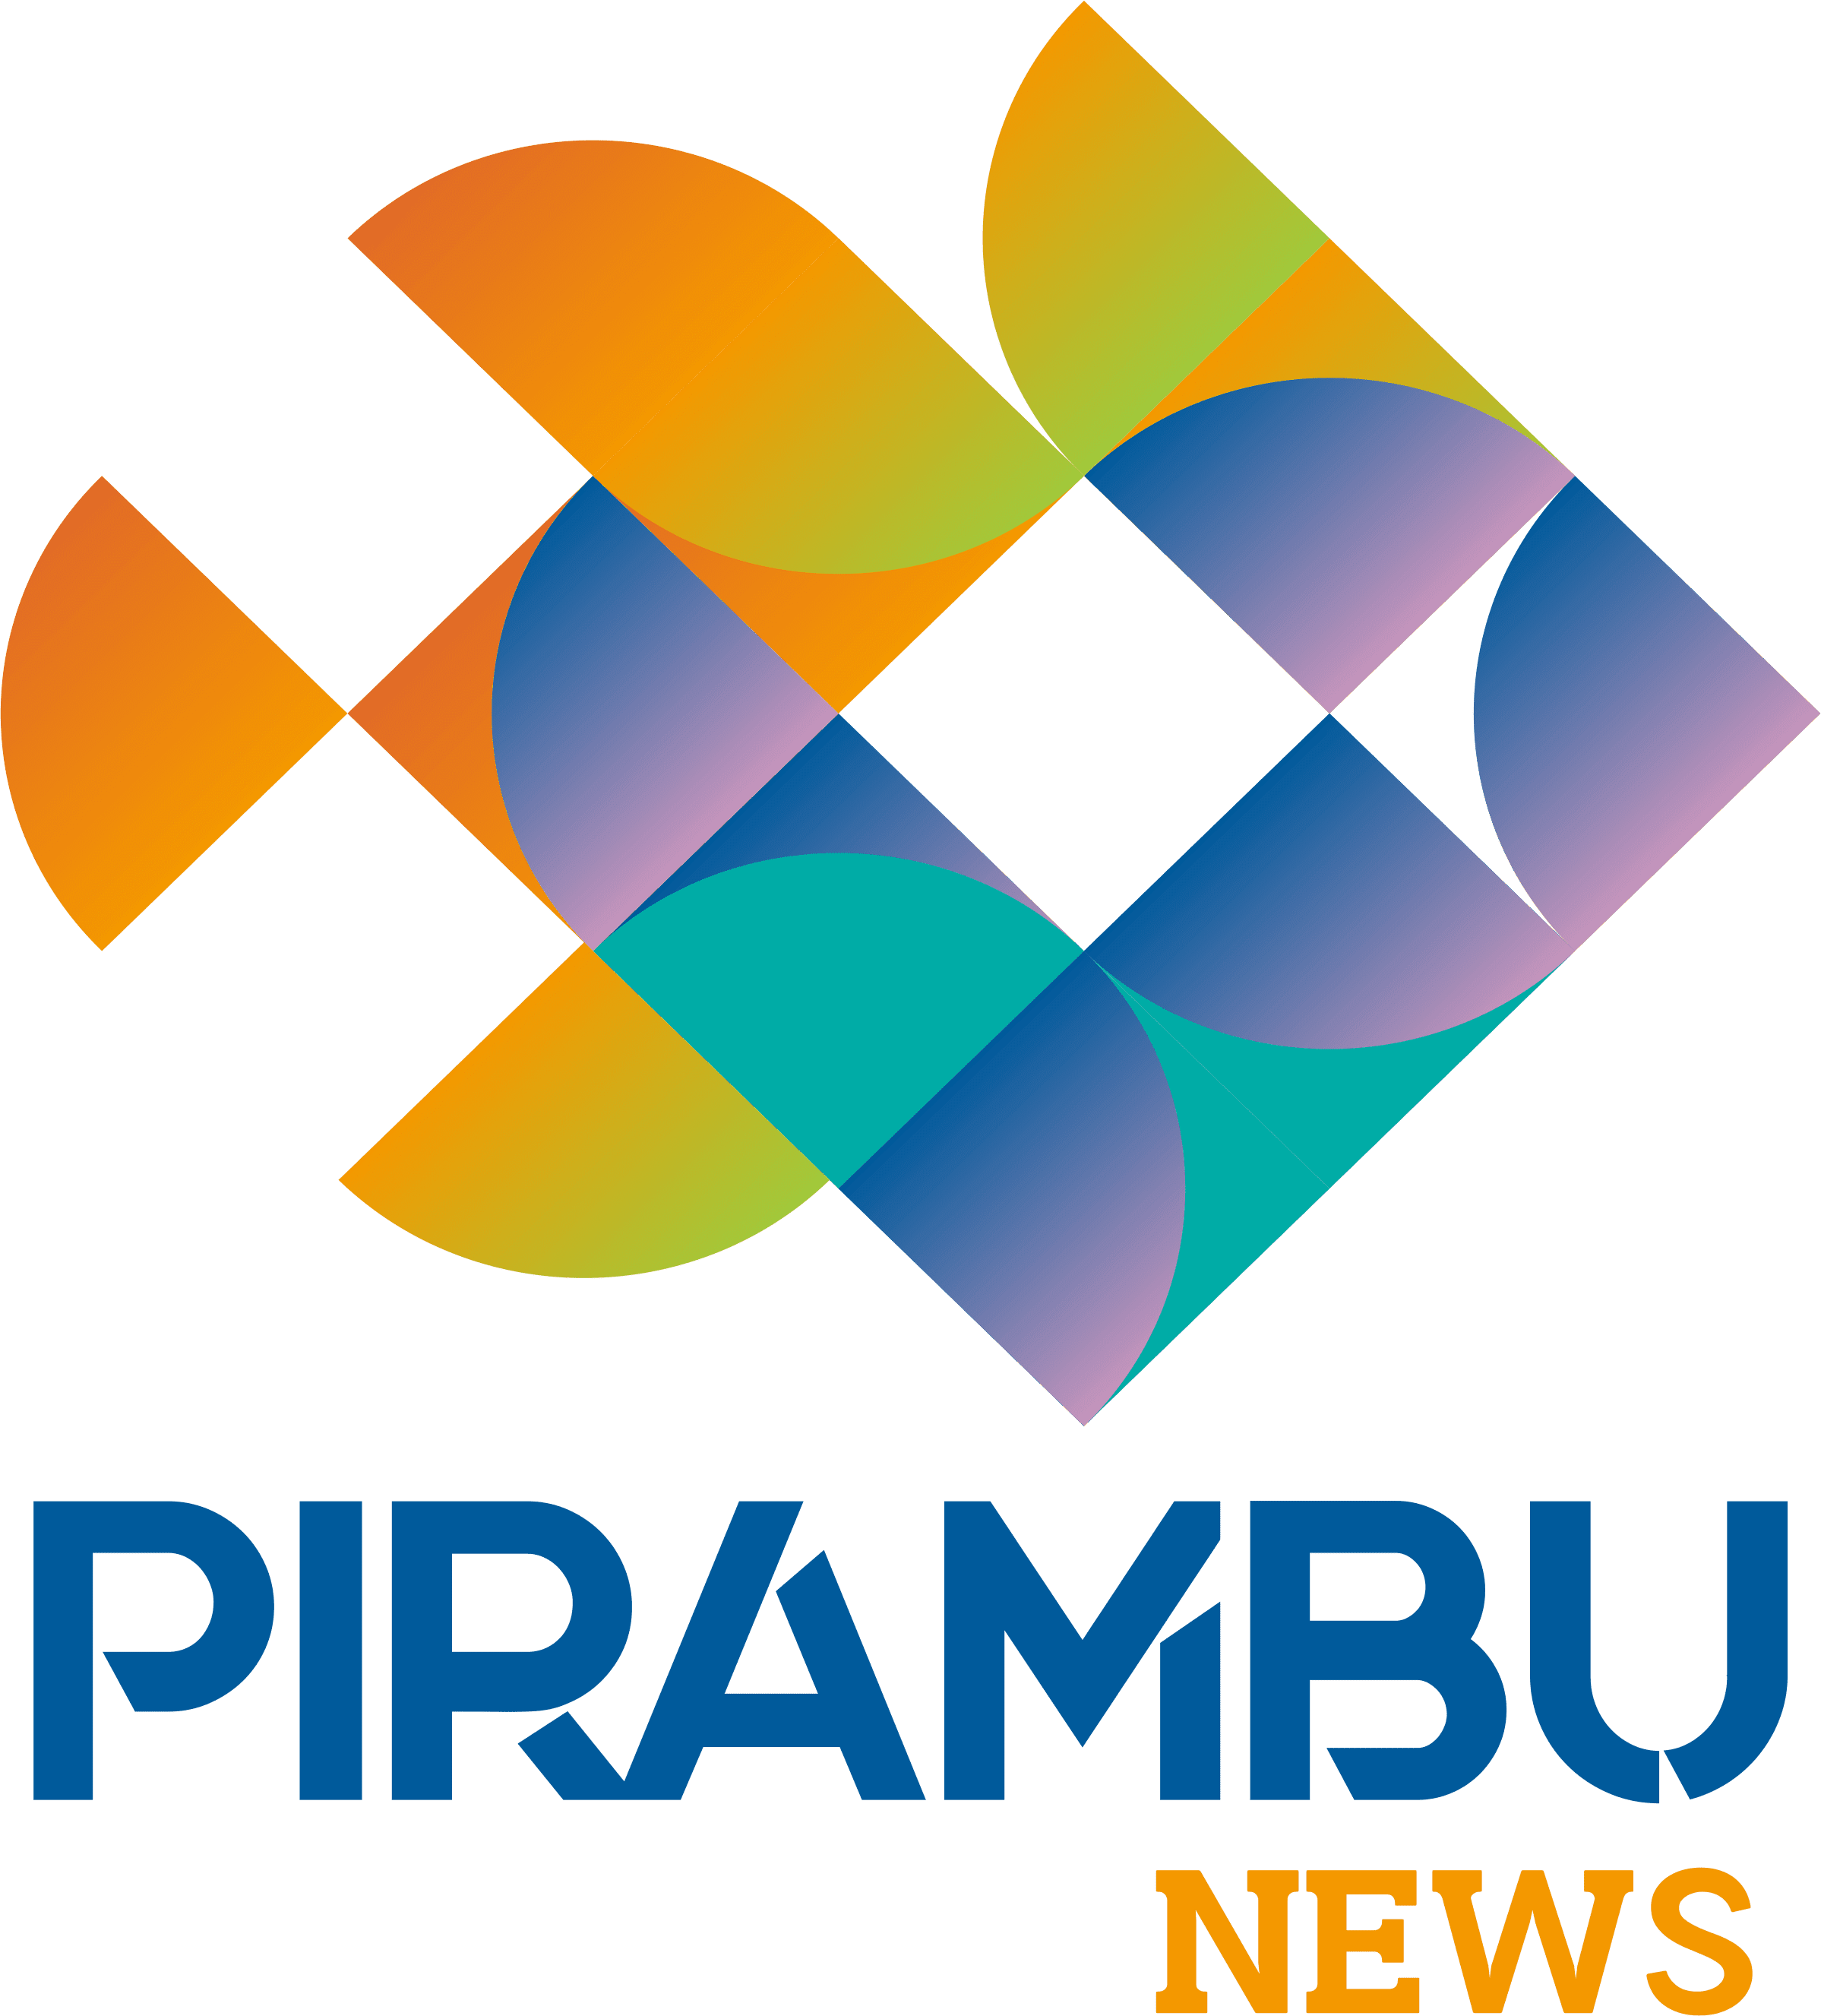 Pirambu News